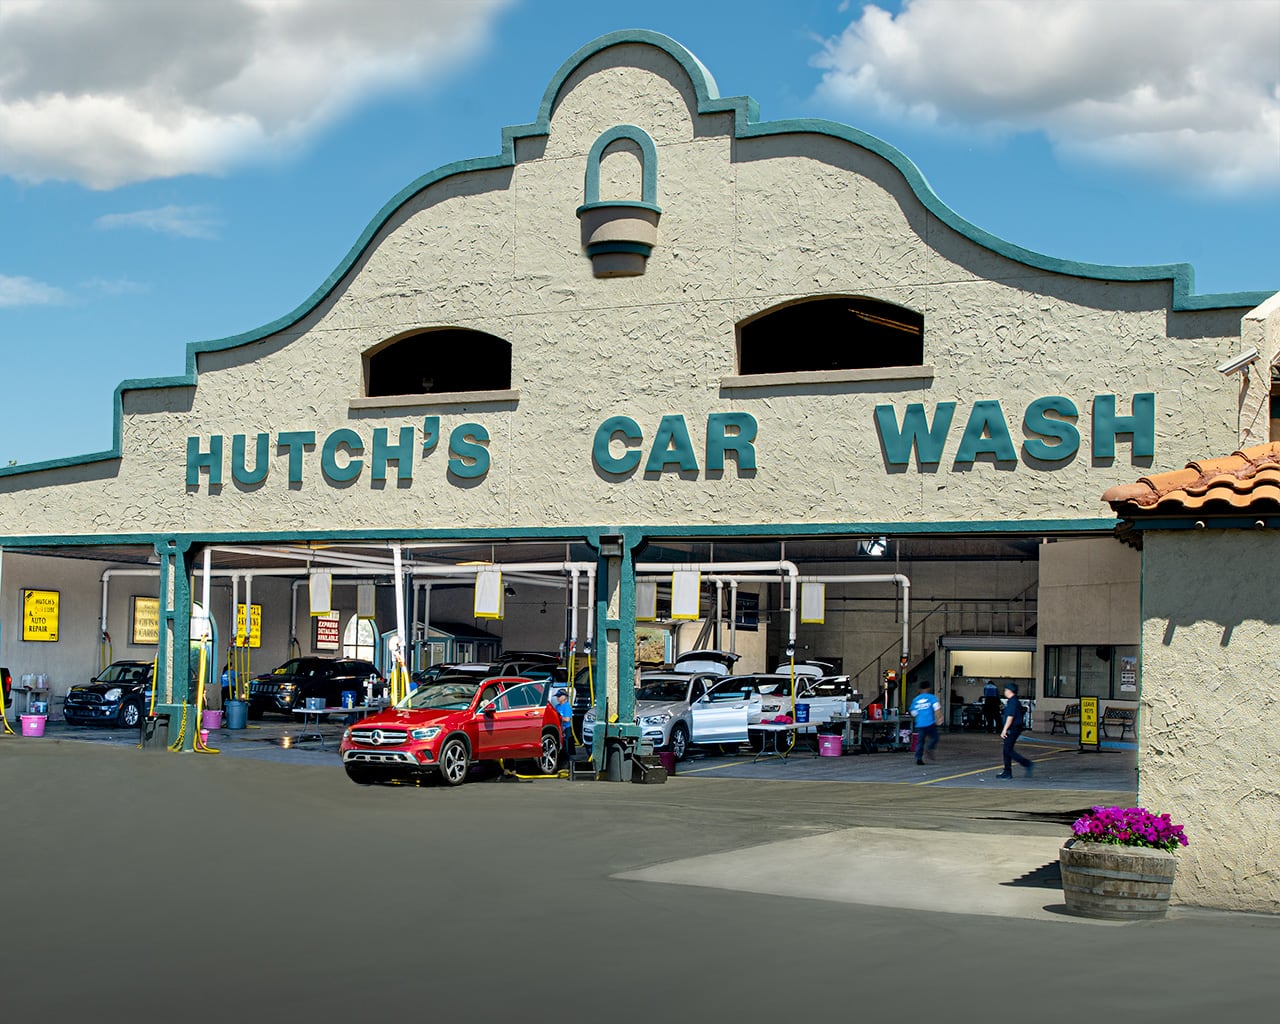 Hutch's Car Wash exterior